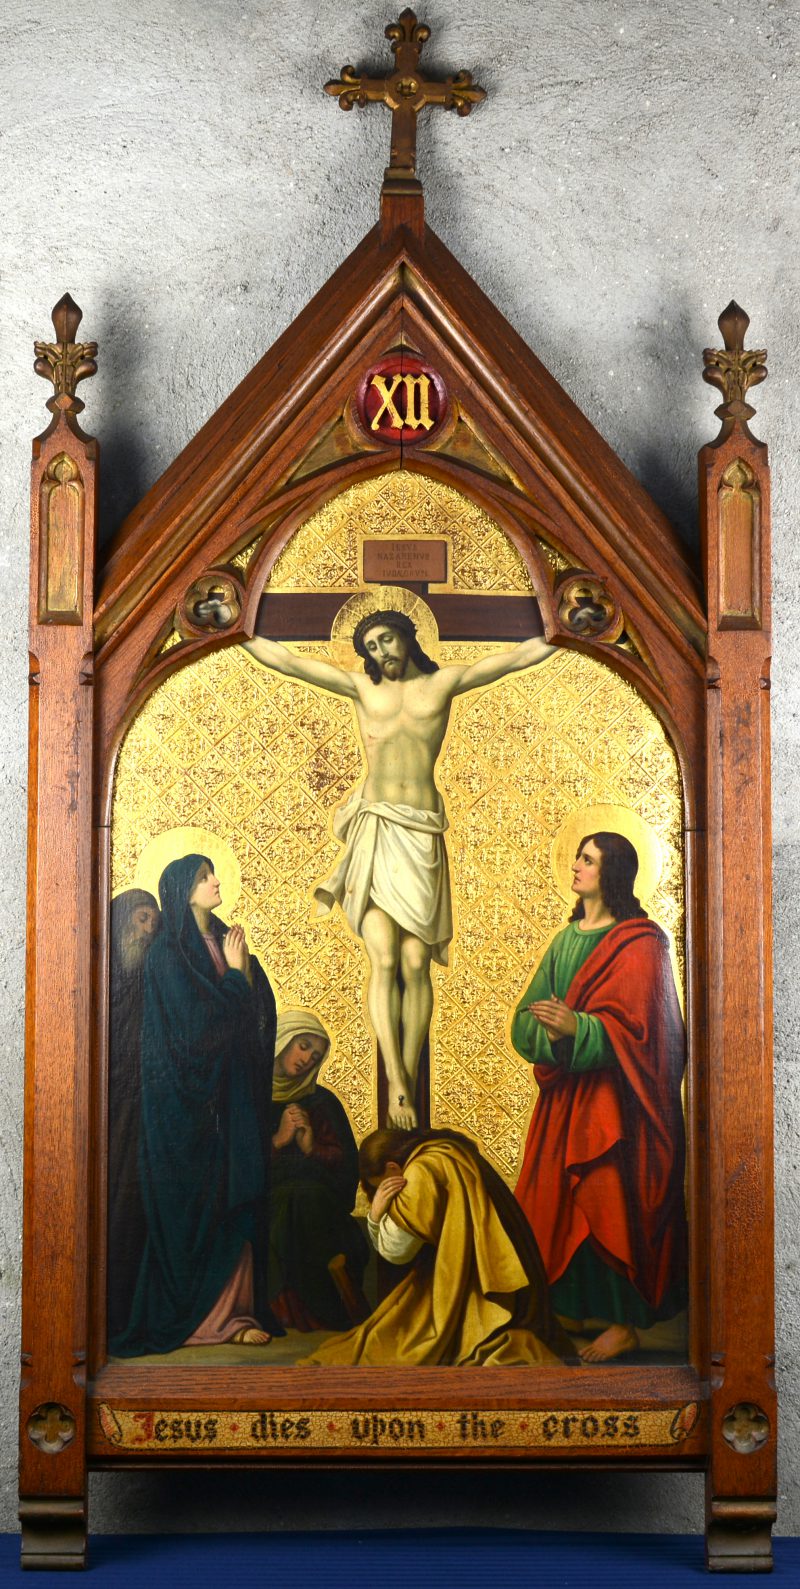 “Jesus dies upon the cross”. Een onderdeel van de kruisweg met olieverf en goudverf in gebeeldhouwde kader.